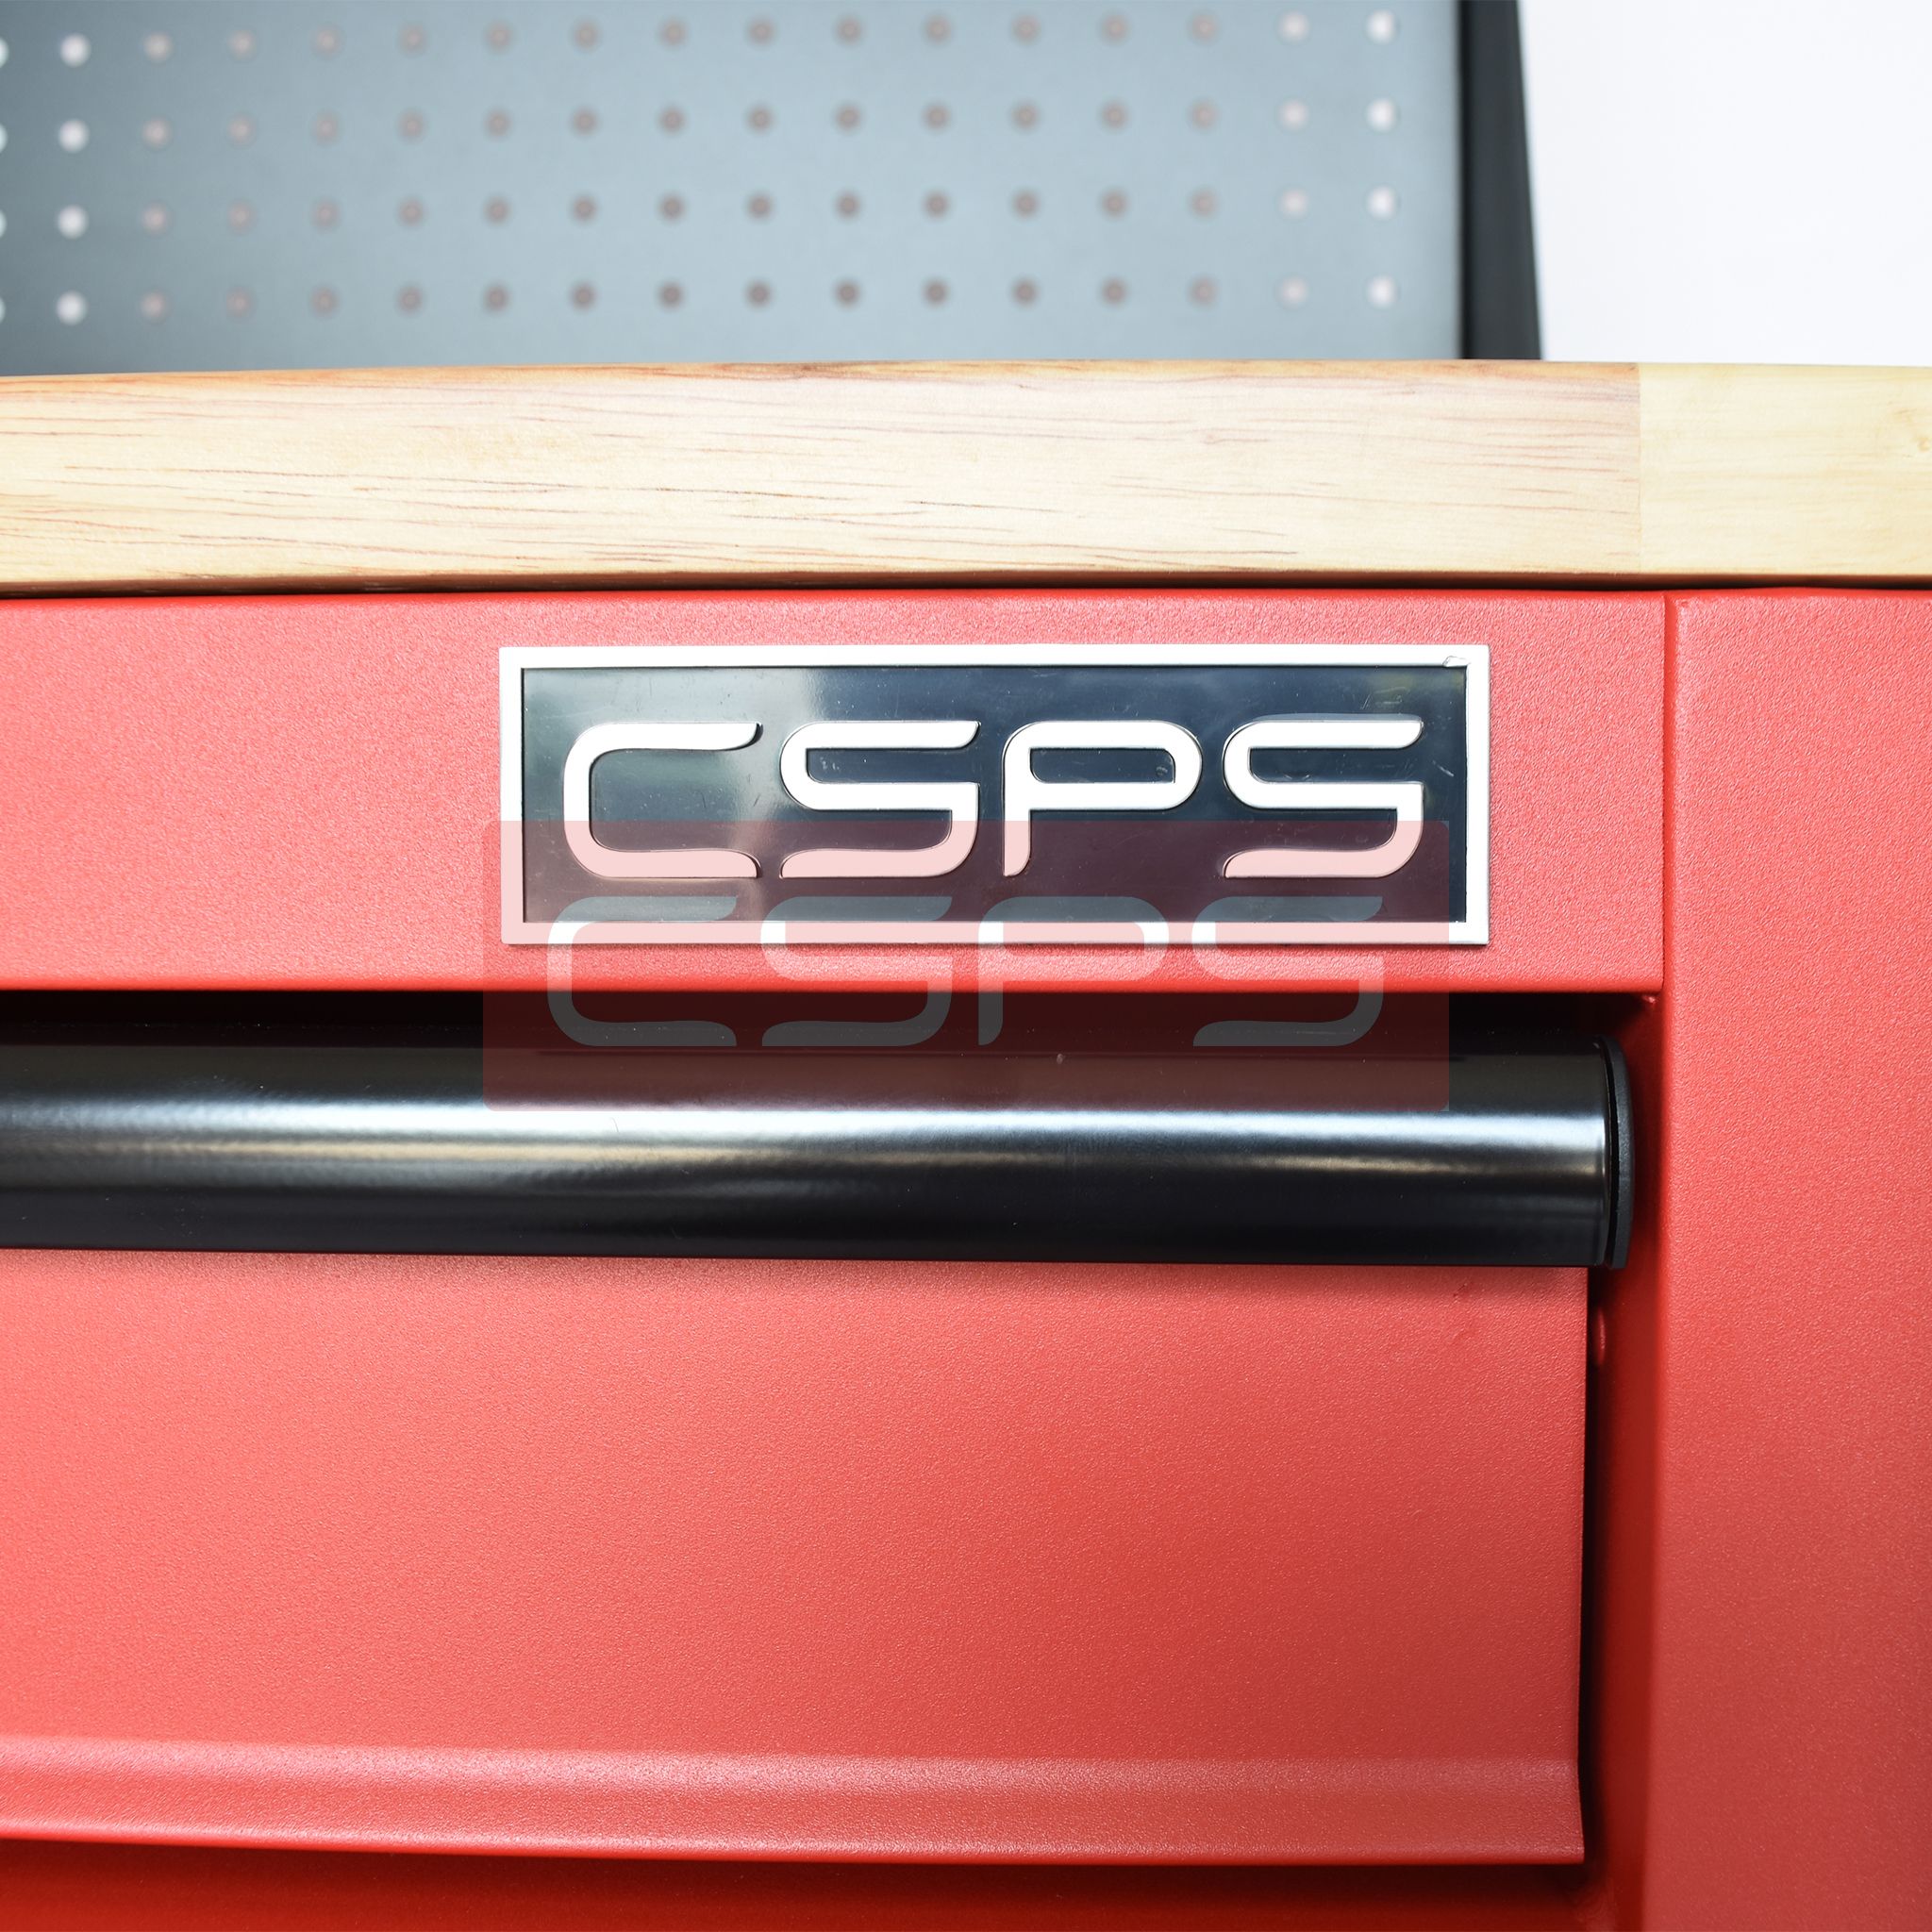  Tủ dụng cụ CSPS 61cm - 01 hộc kéo màu đen/đỏ 